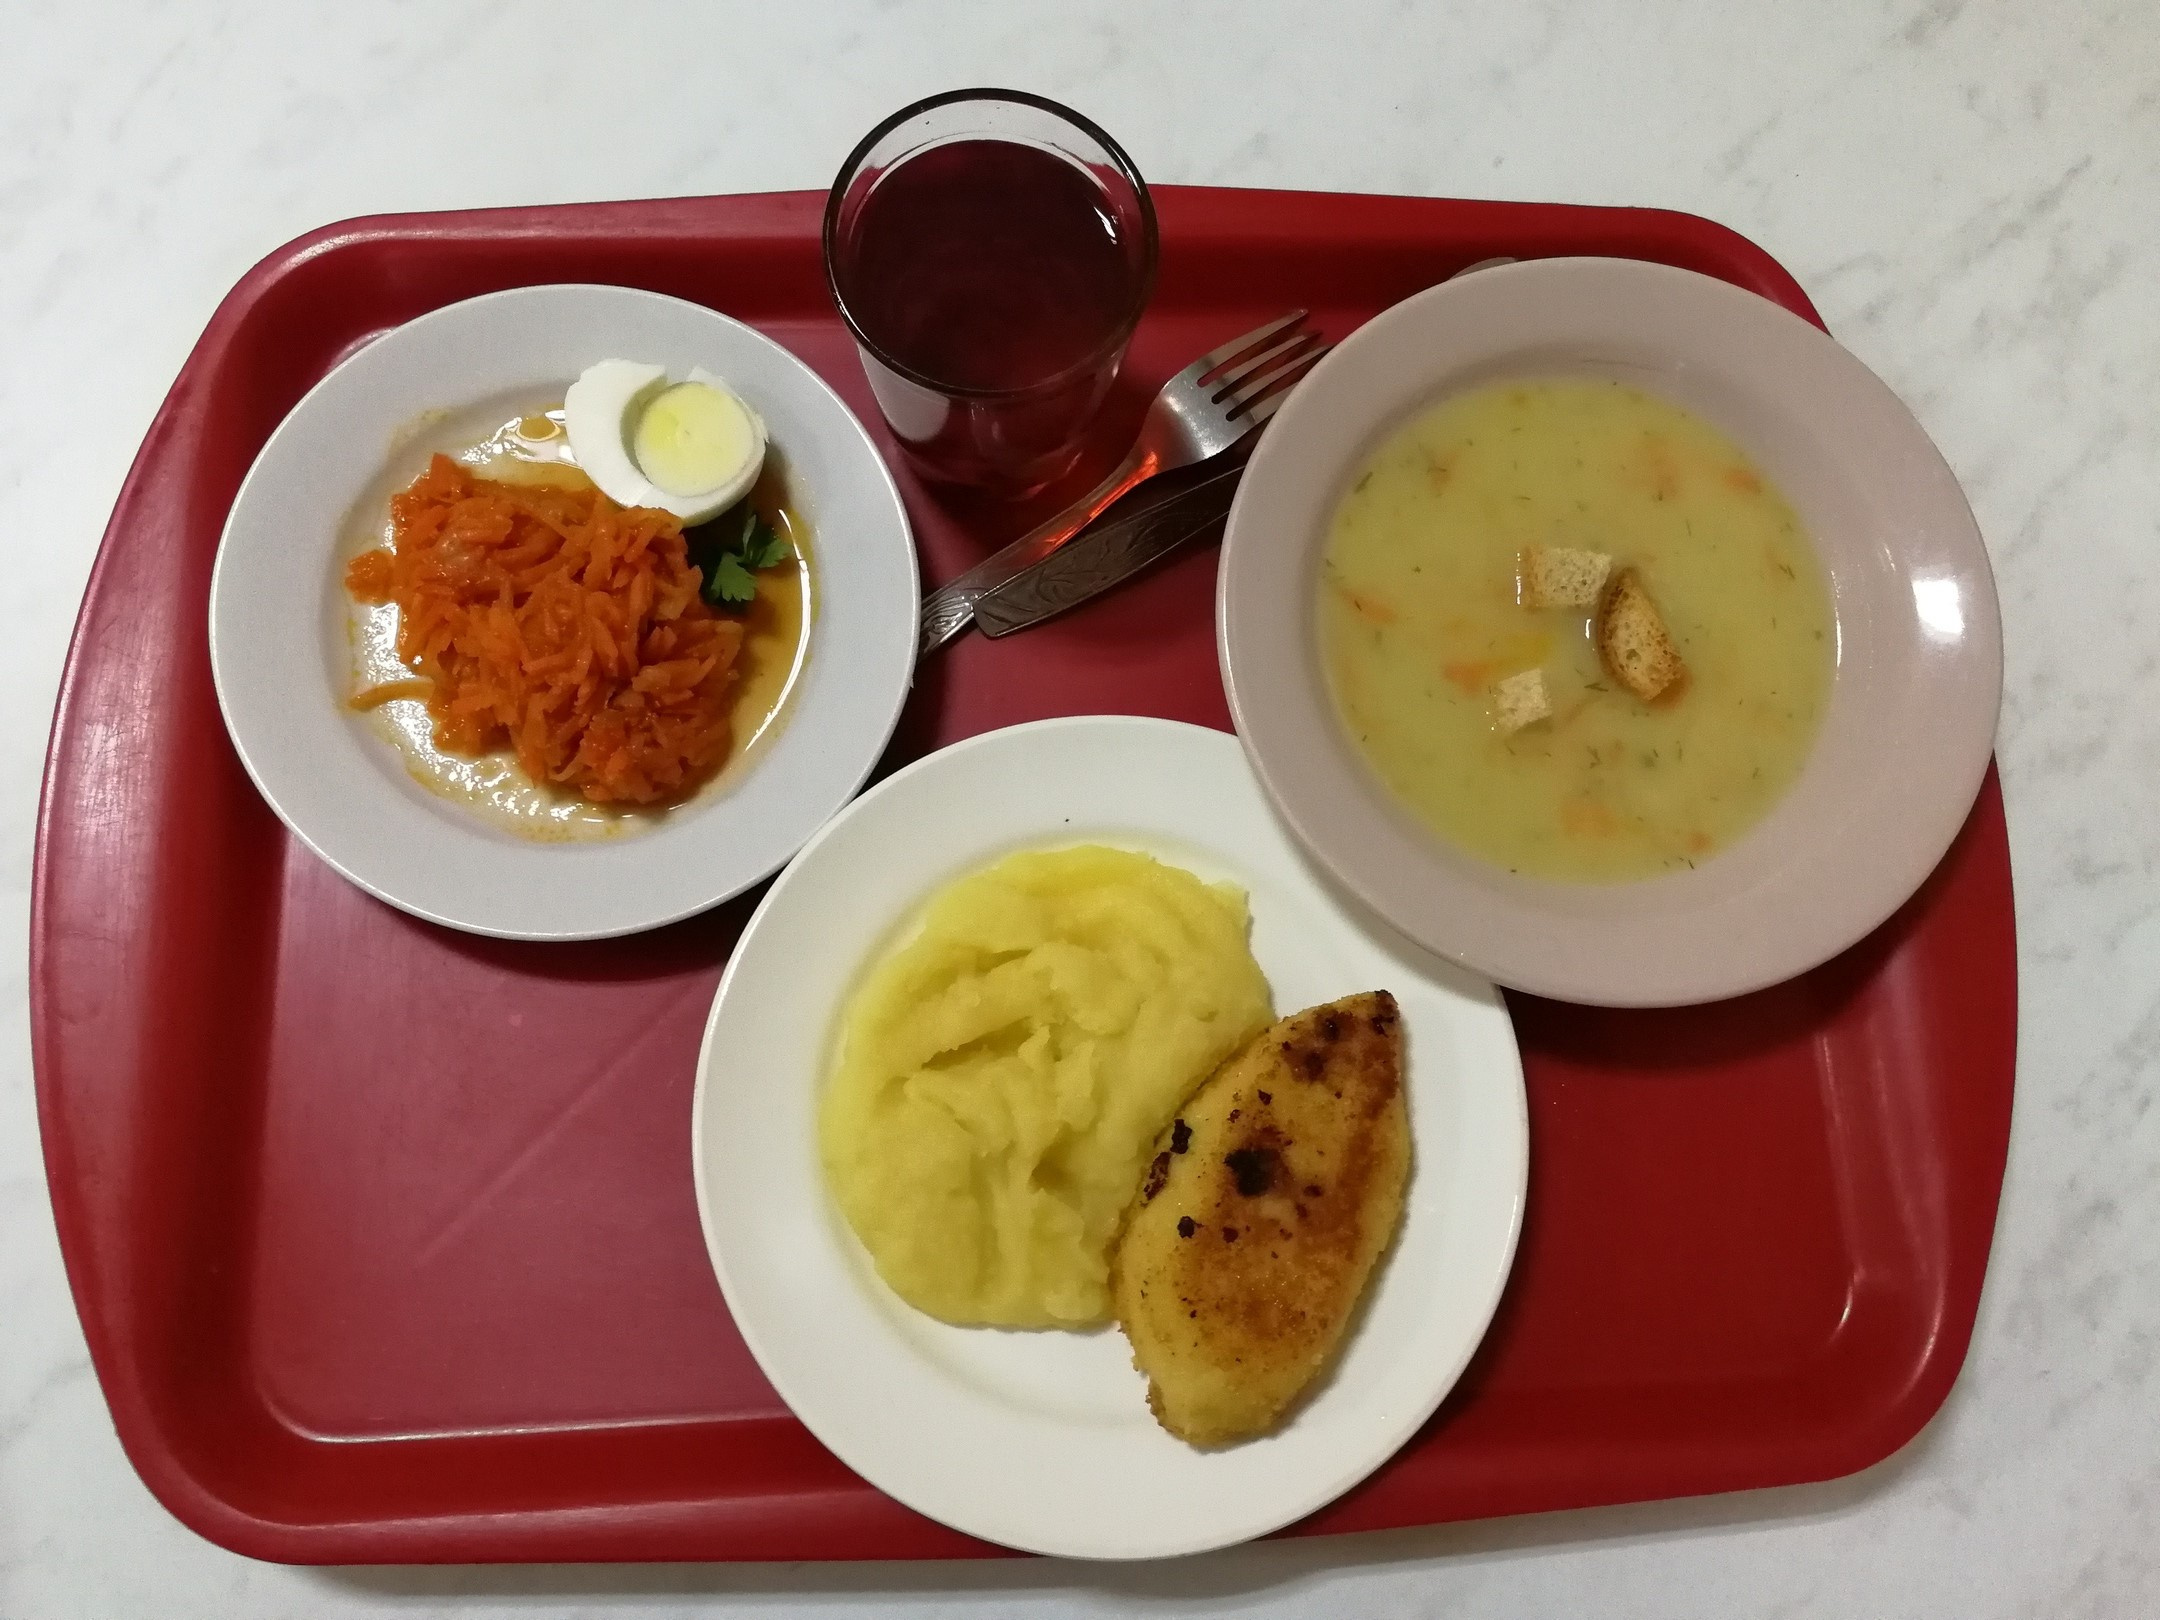 Обед из трех блюд и напитка (на фото — еда из столовой при администрации Дзержинского района) легко укладывается в сумму до 200 рублей